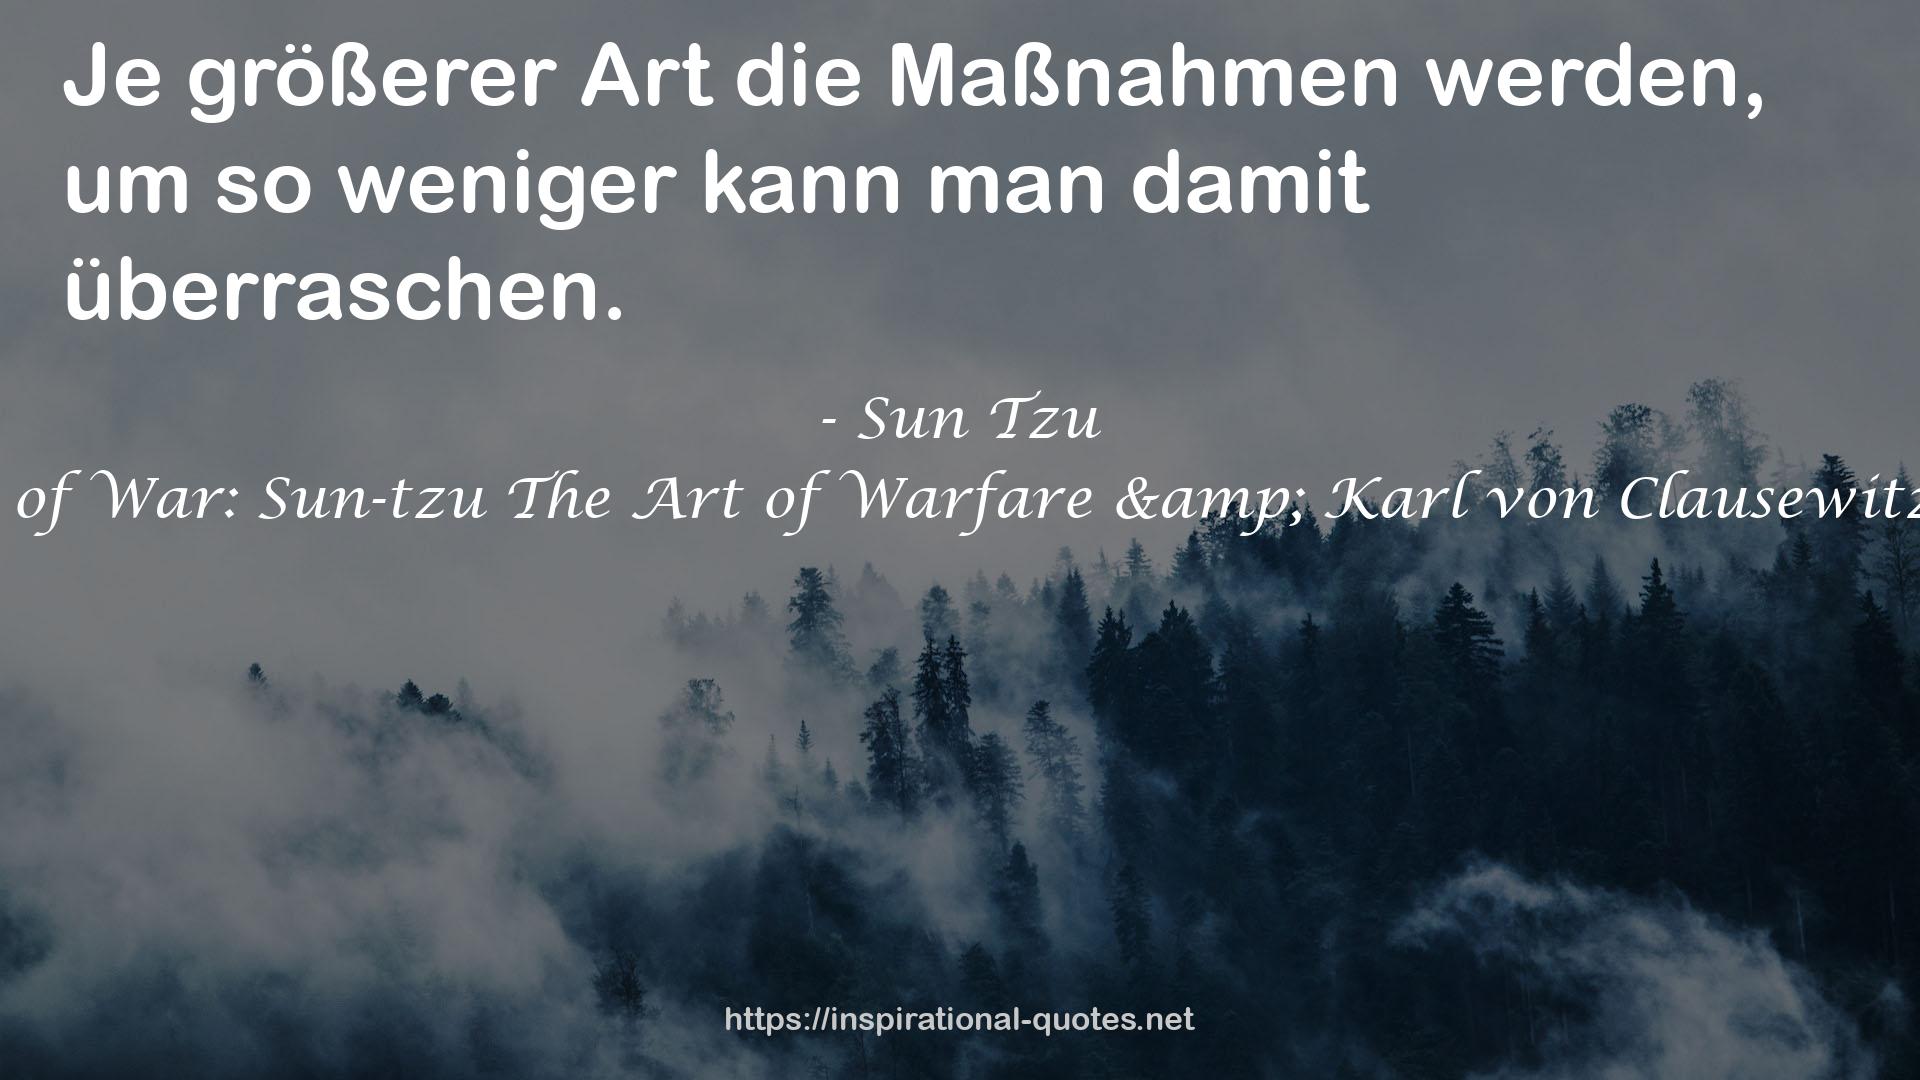 The Book of War: Sun-tzu The Art of Warfare & Karl von Clausewitz On War QUOTES